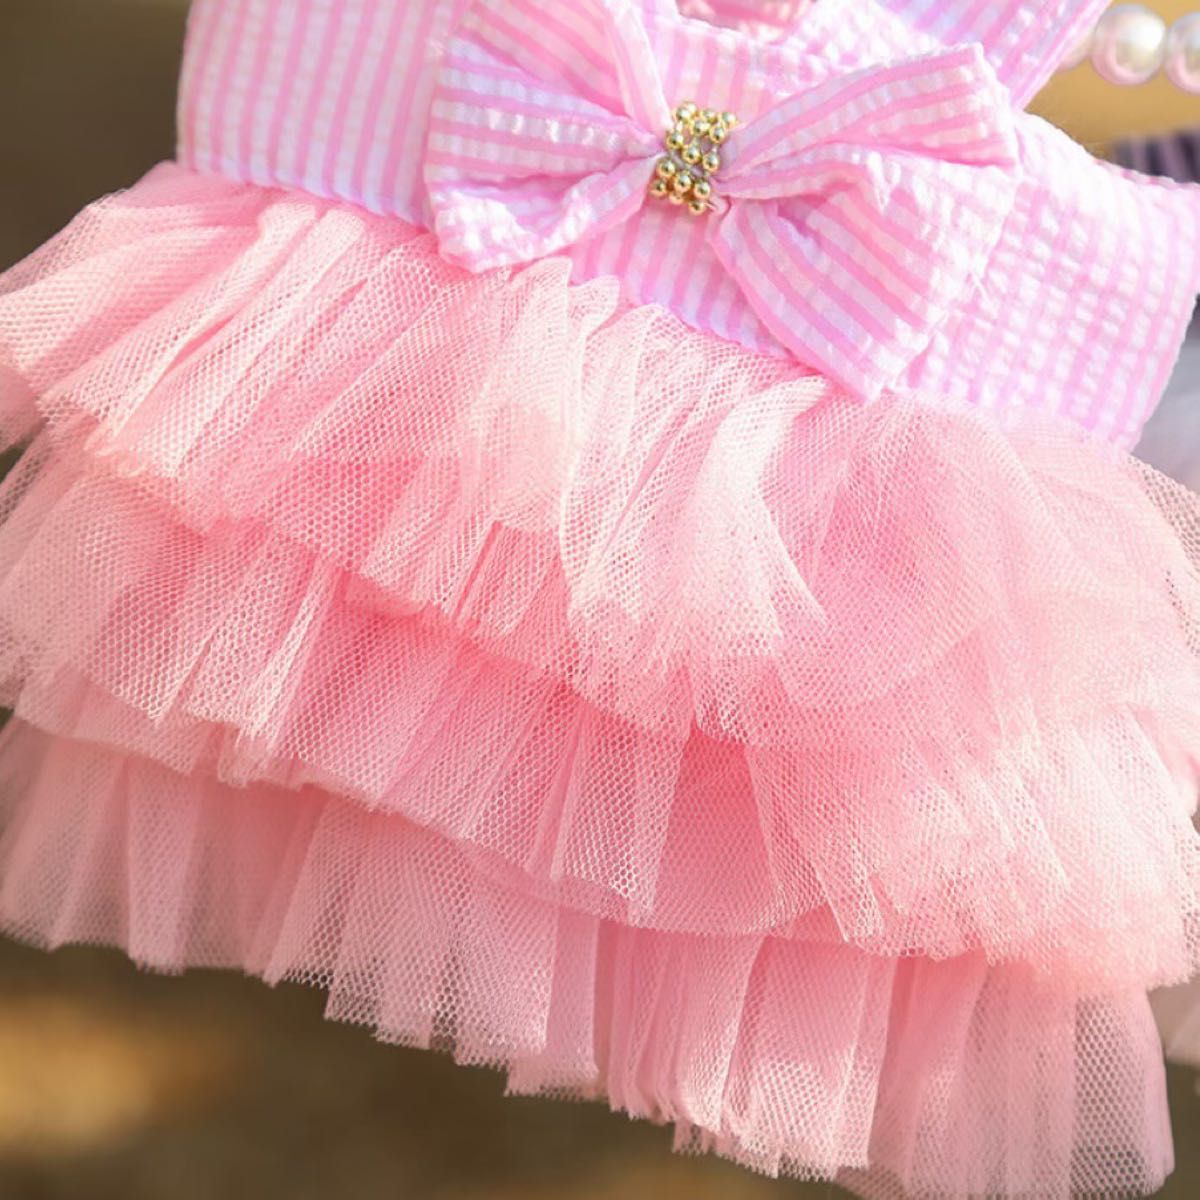 S ピンク スカート チェック チュール 犬 リボン アイドル ウェア 可愛い 韓国 女の子 ペット用品 犬服 ドッグウェア